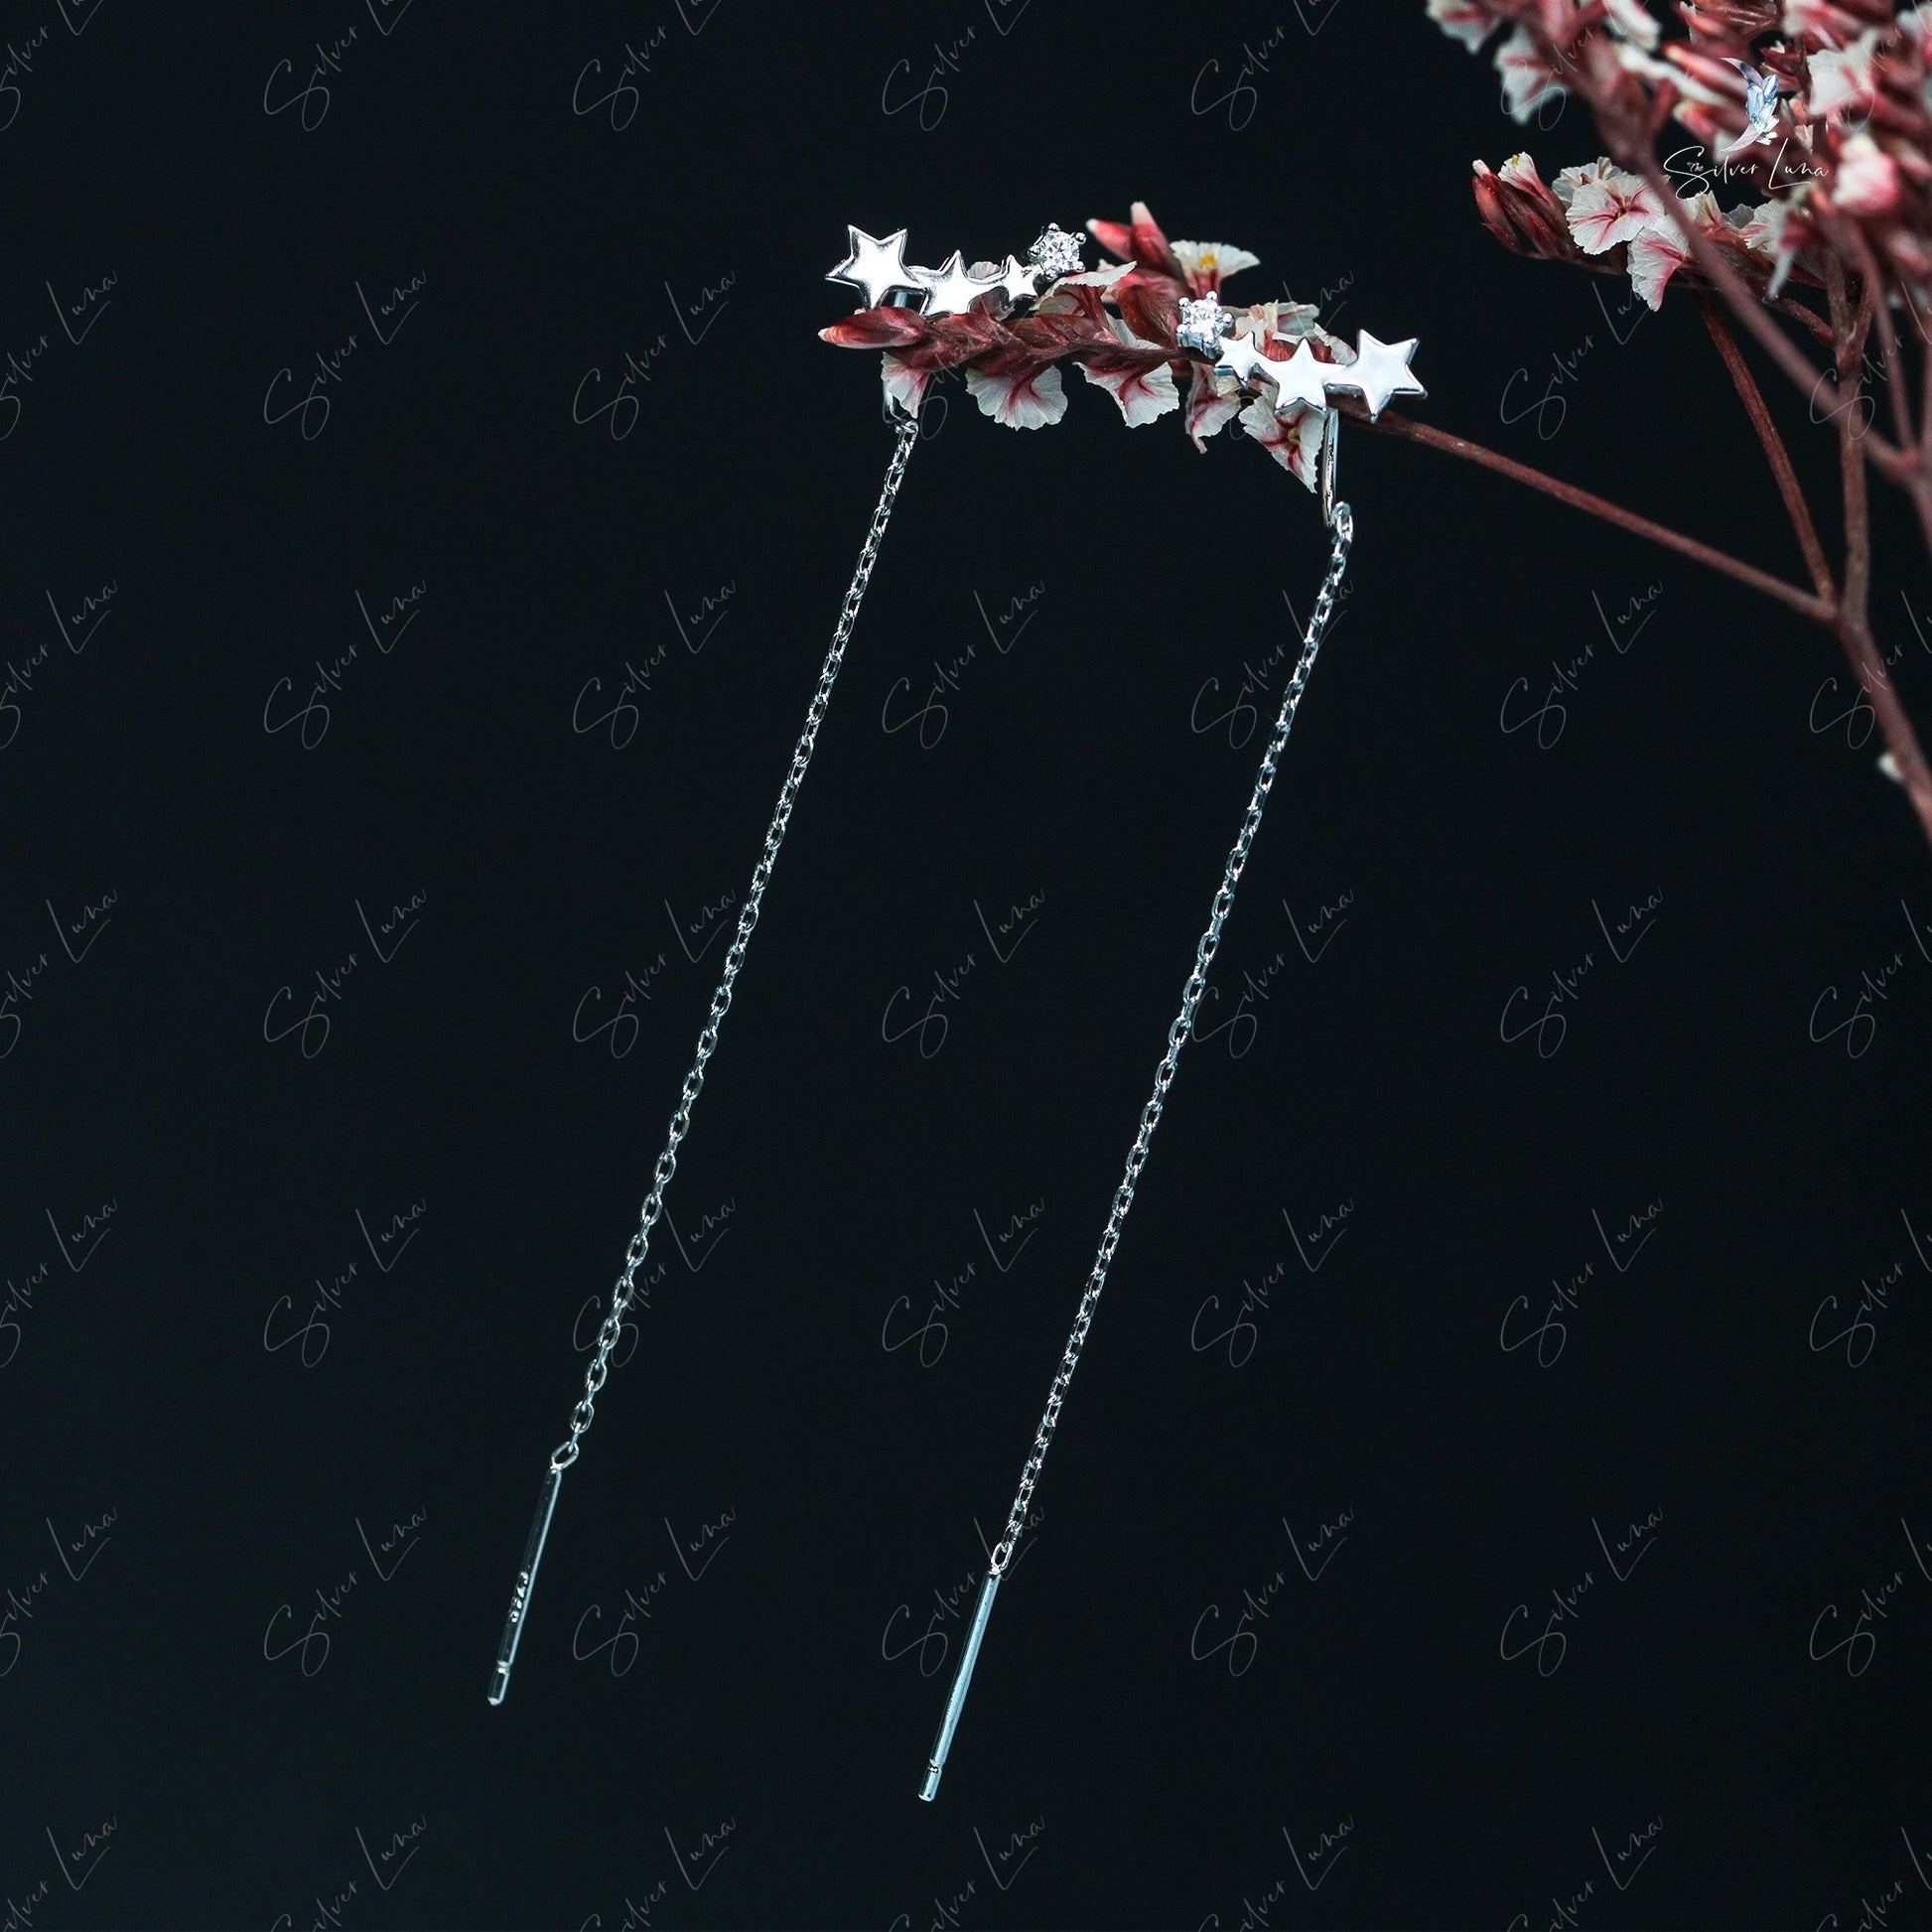 star threader earrings